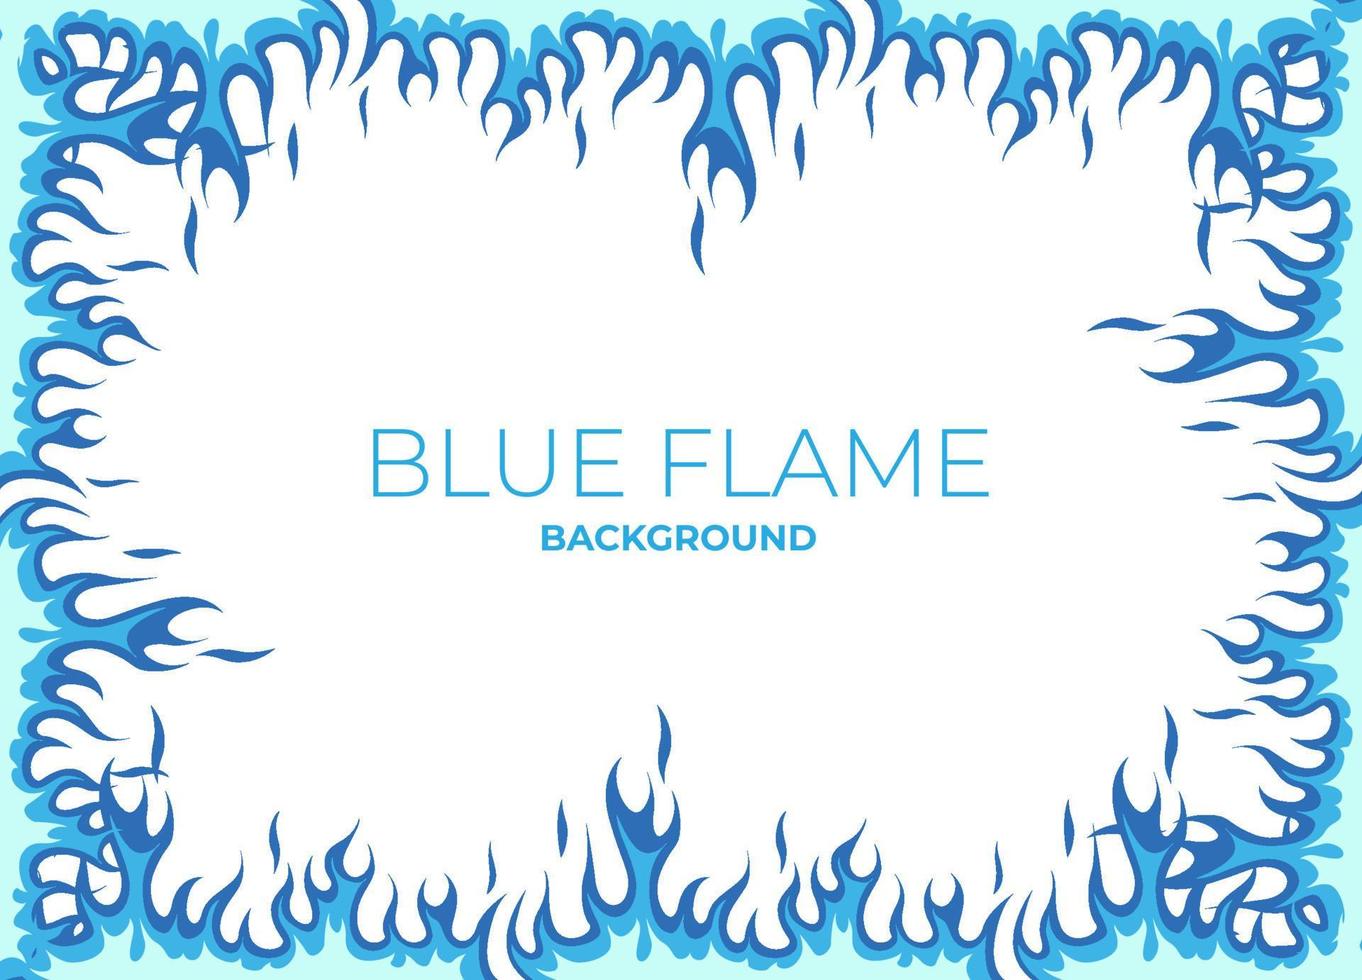 ensemble d'éléments d'illustration vectorielle de flammes bleues, arrière-plan, cadre, effets, mise en page. vecteur eps 10. dessin animé de flammes.